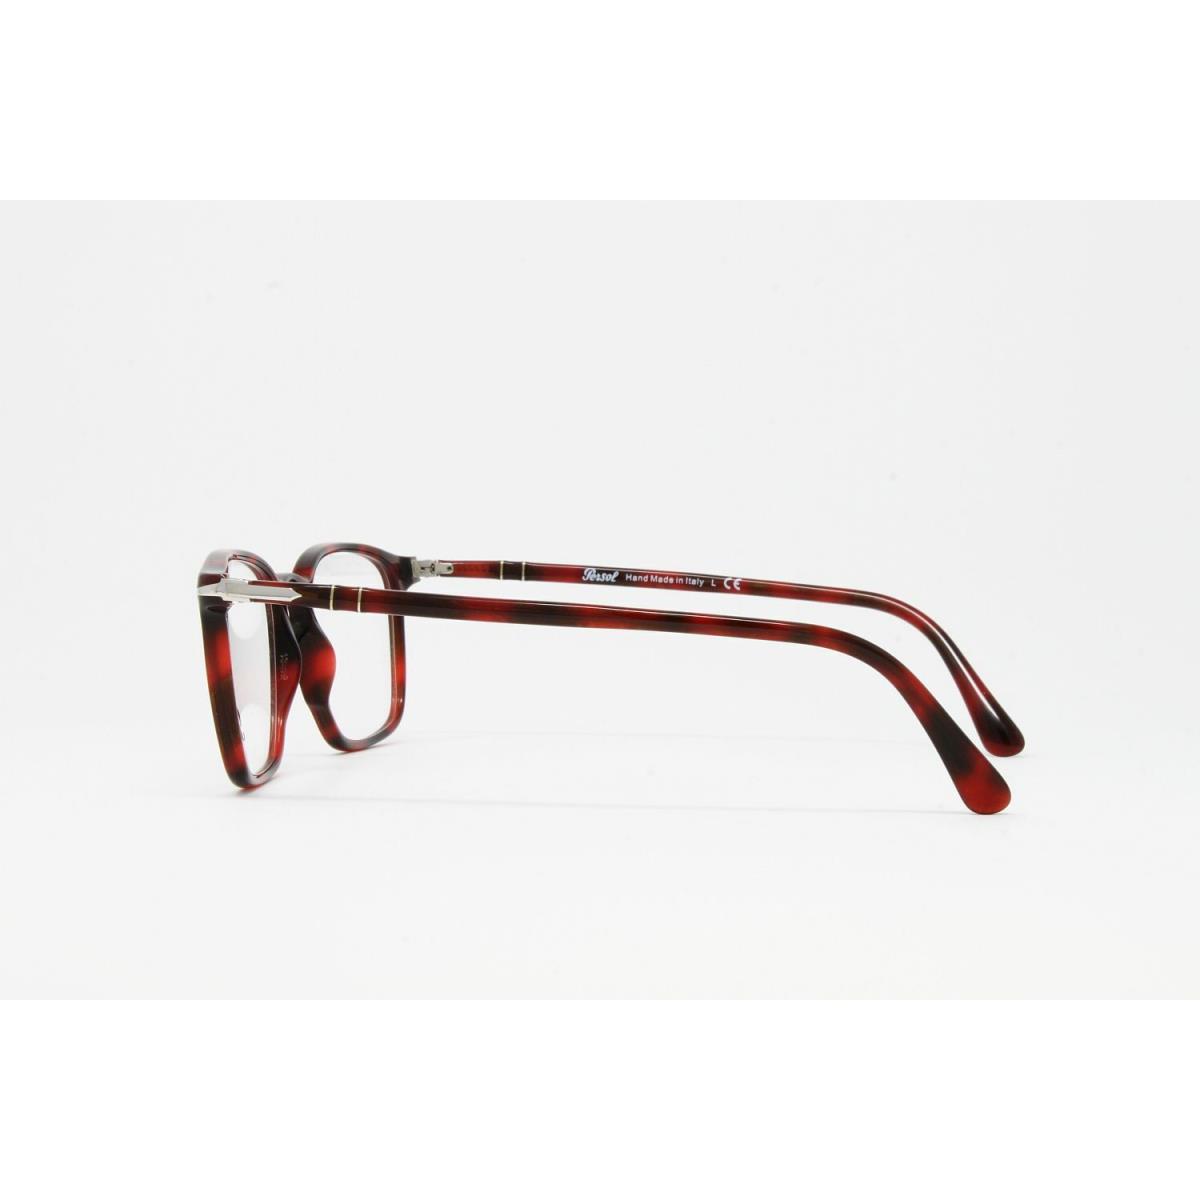 Persol eyeglasses Color - Red Frame 1